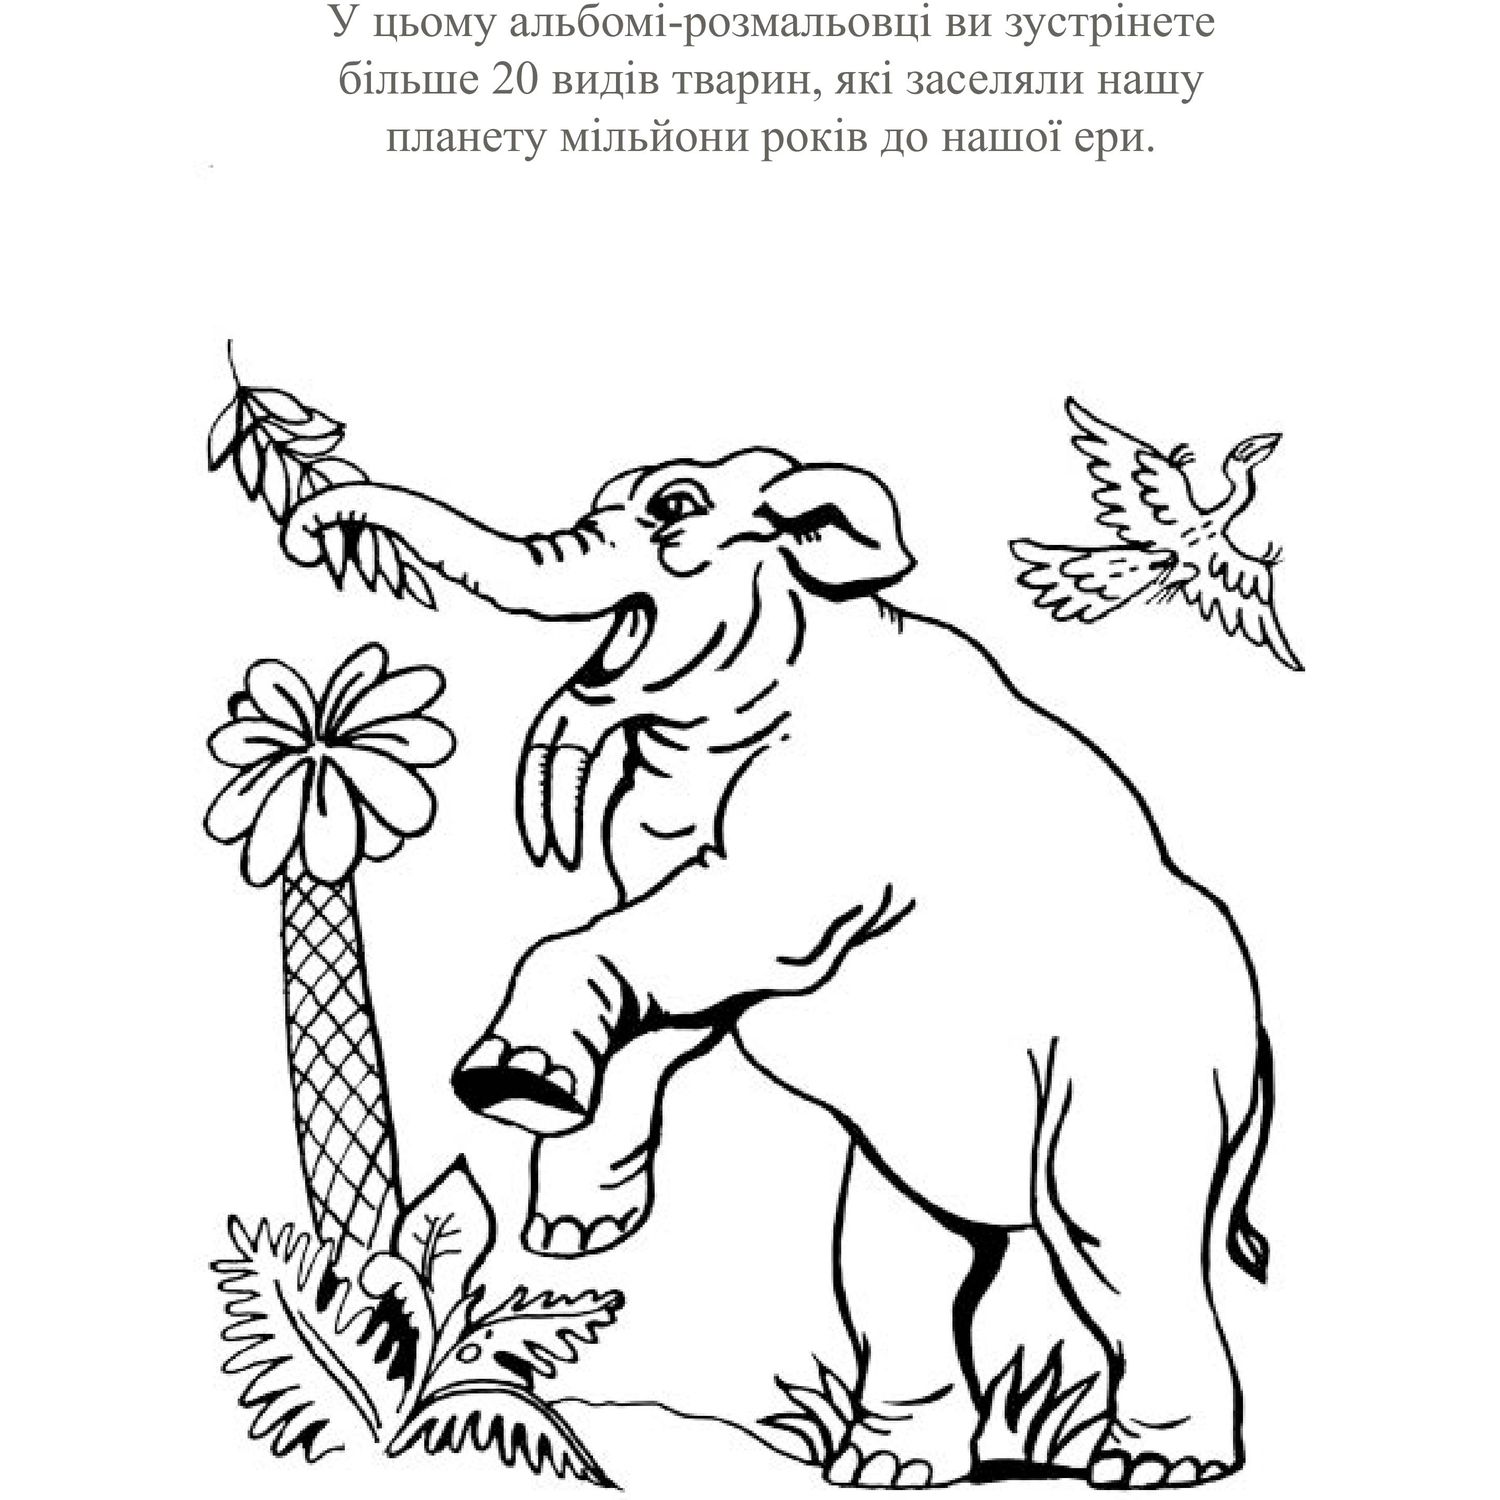 Альбом-розмальовка Богдан Планета динозаврів Частина 1 24 сторінки (978-966-10-2019-0) - фото 3